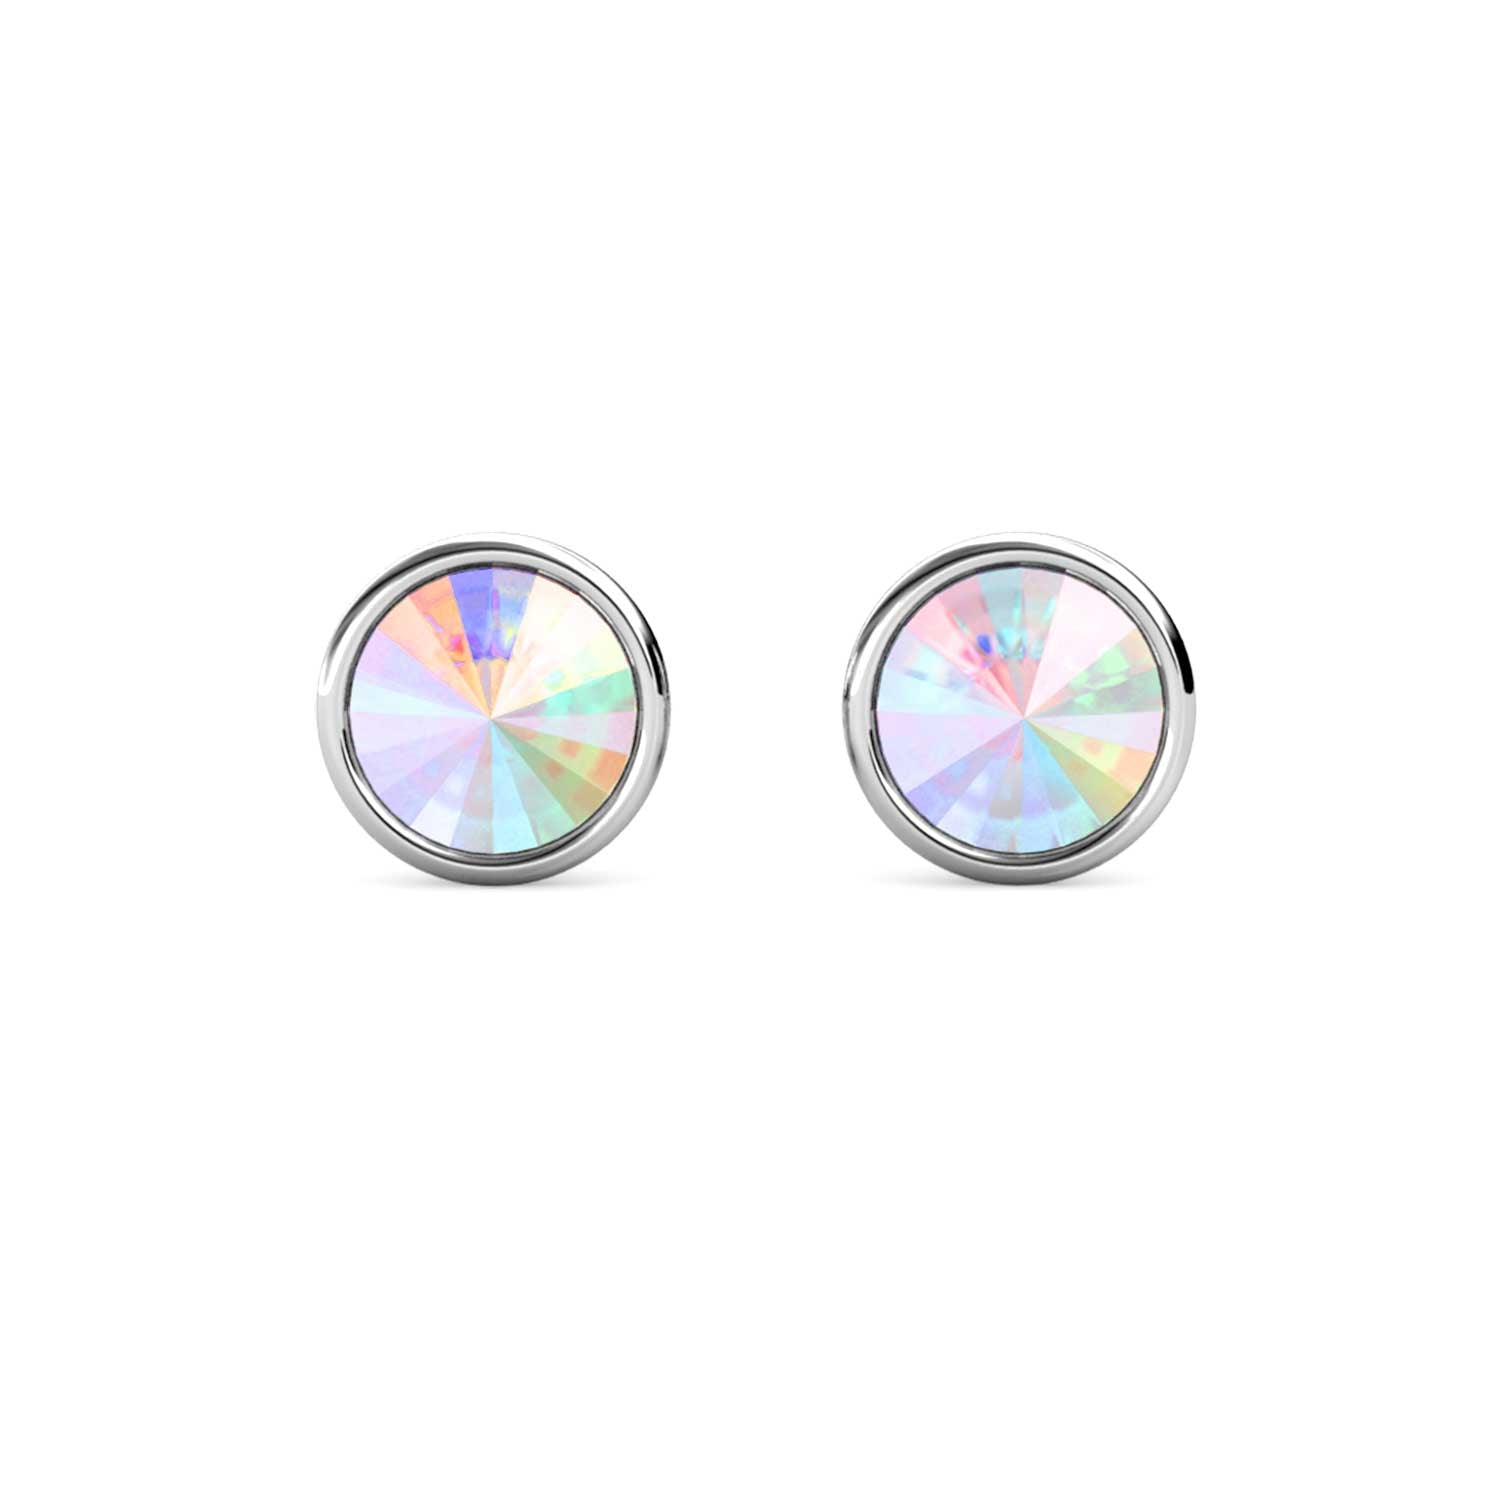 crystal silver stud earrings for women girls men